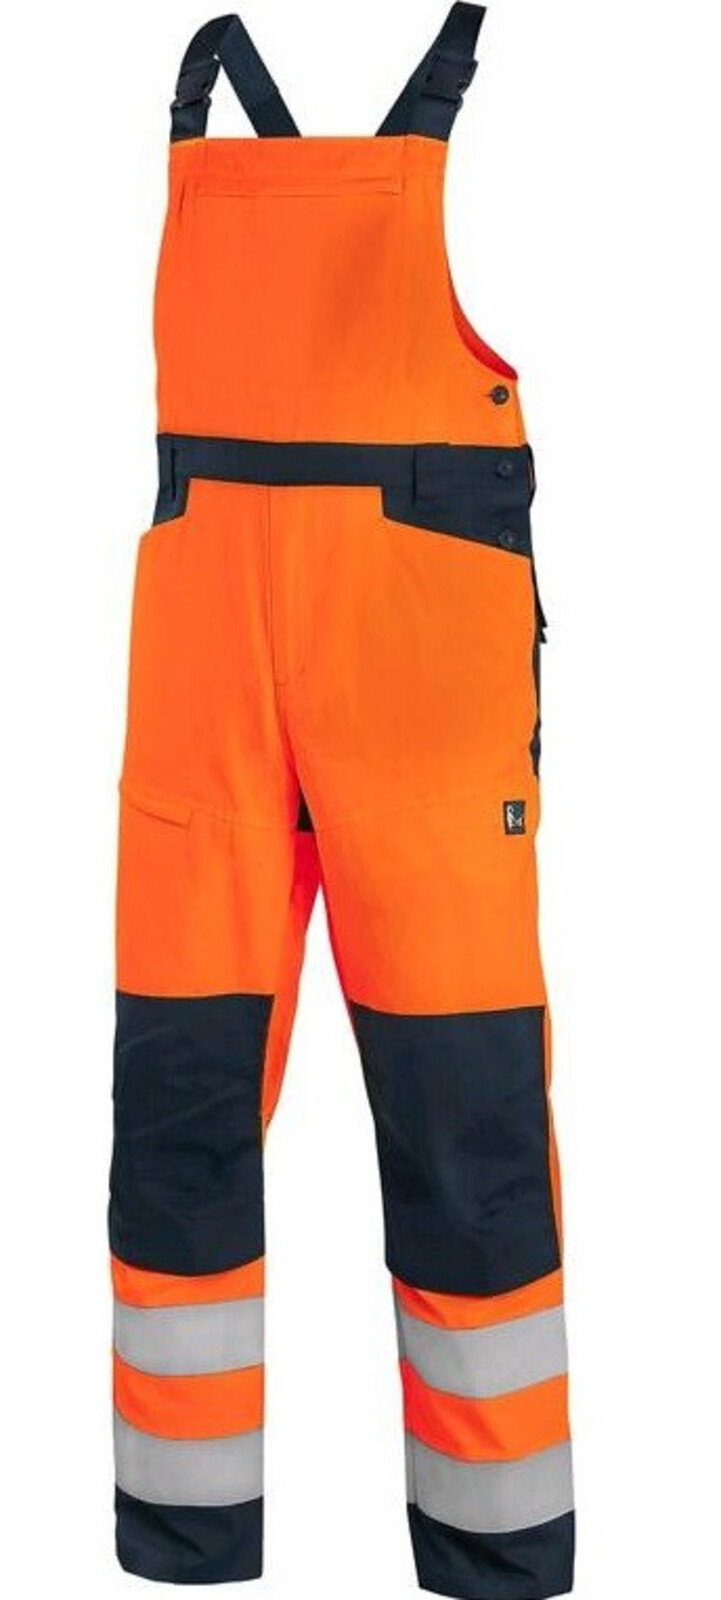 Pánske letné reflexné nohavice na traky CXS Halifax - veľkosť: 48, farba: oranžová/navy